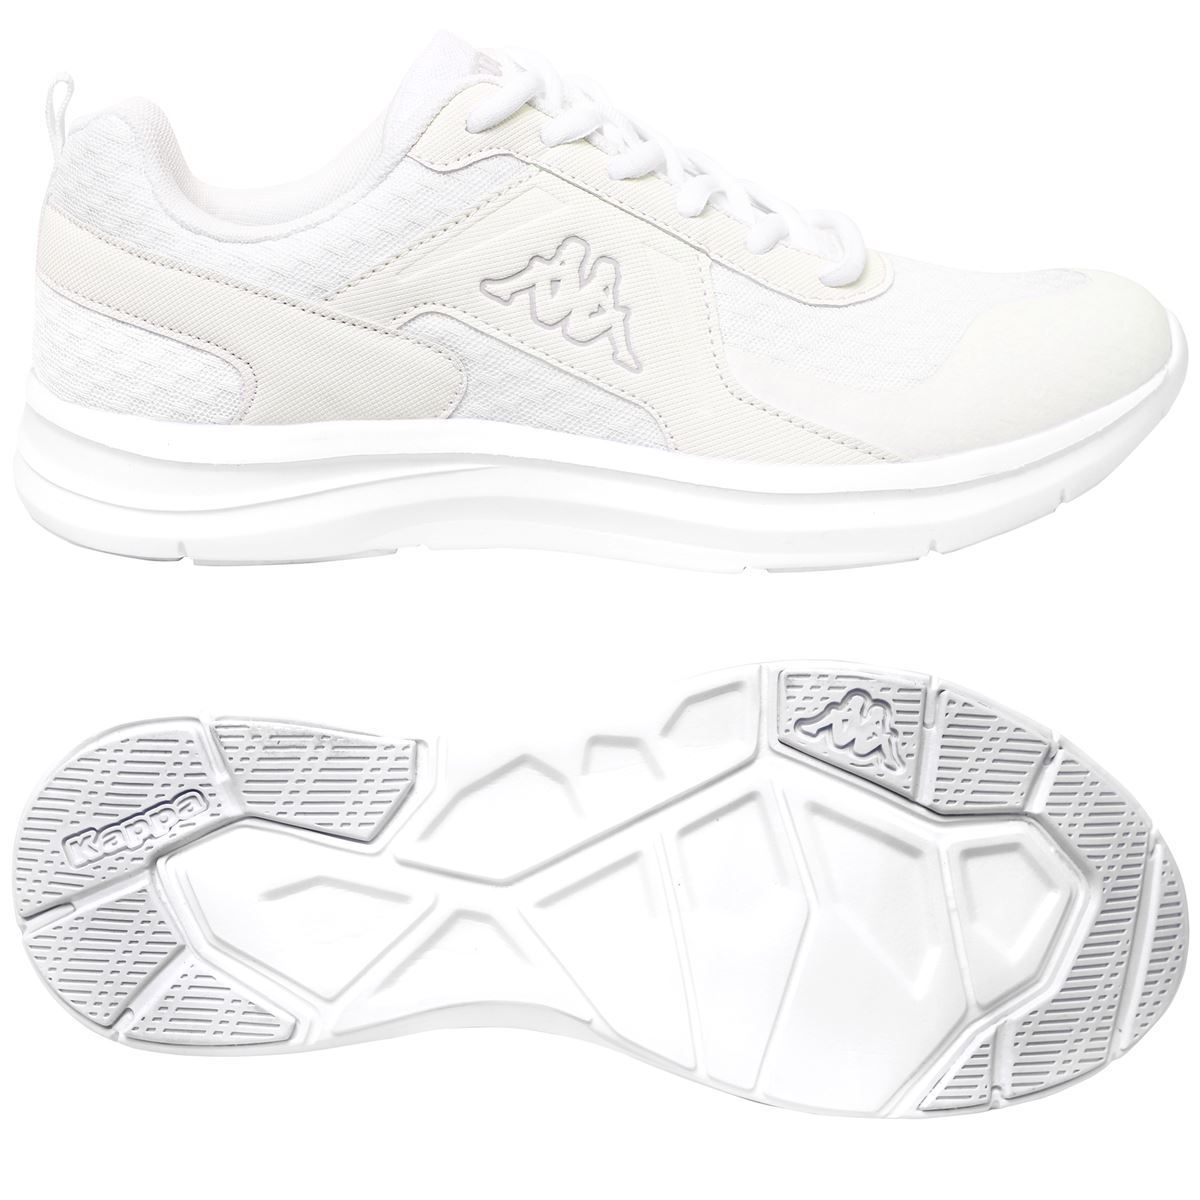 Zapatillas Kappa blancas deportivas